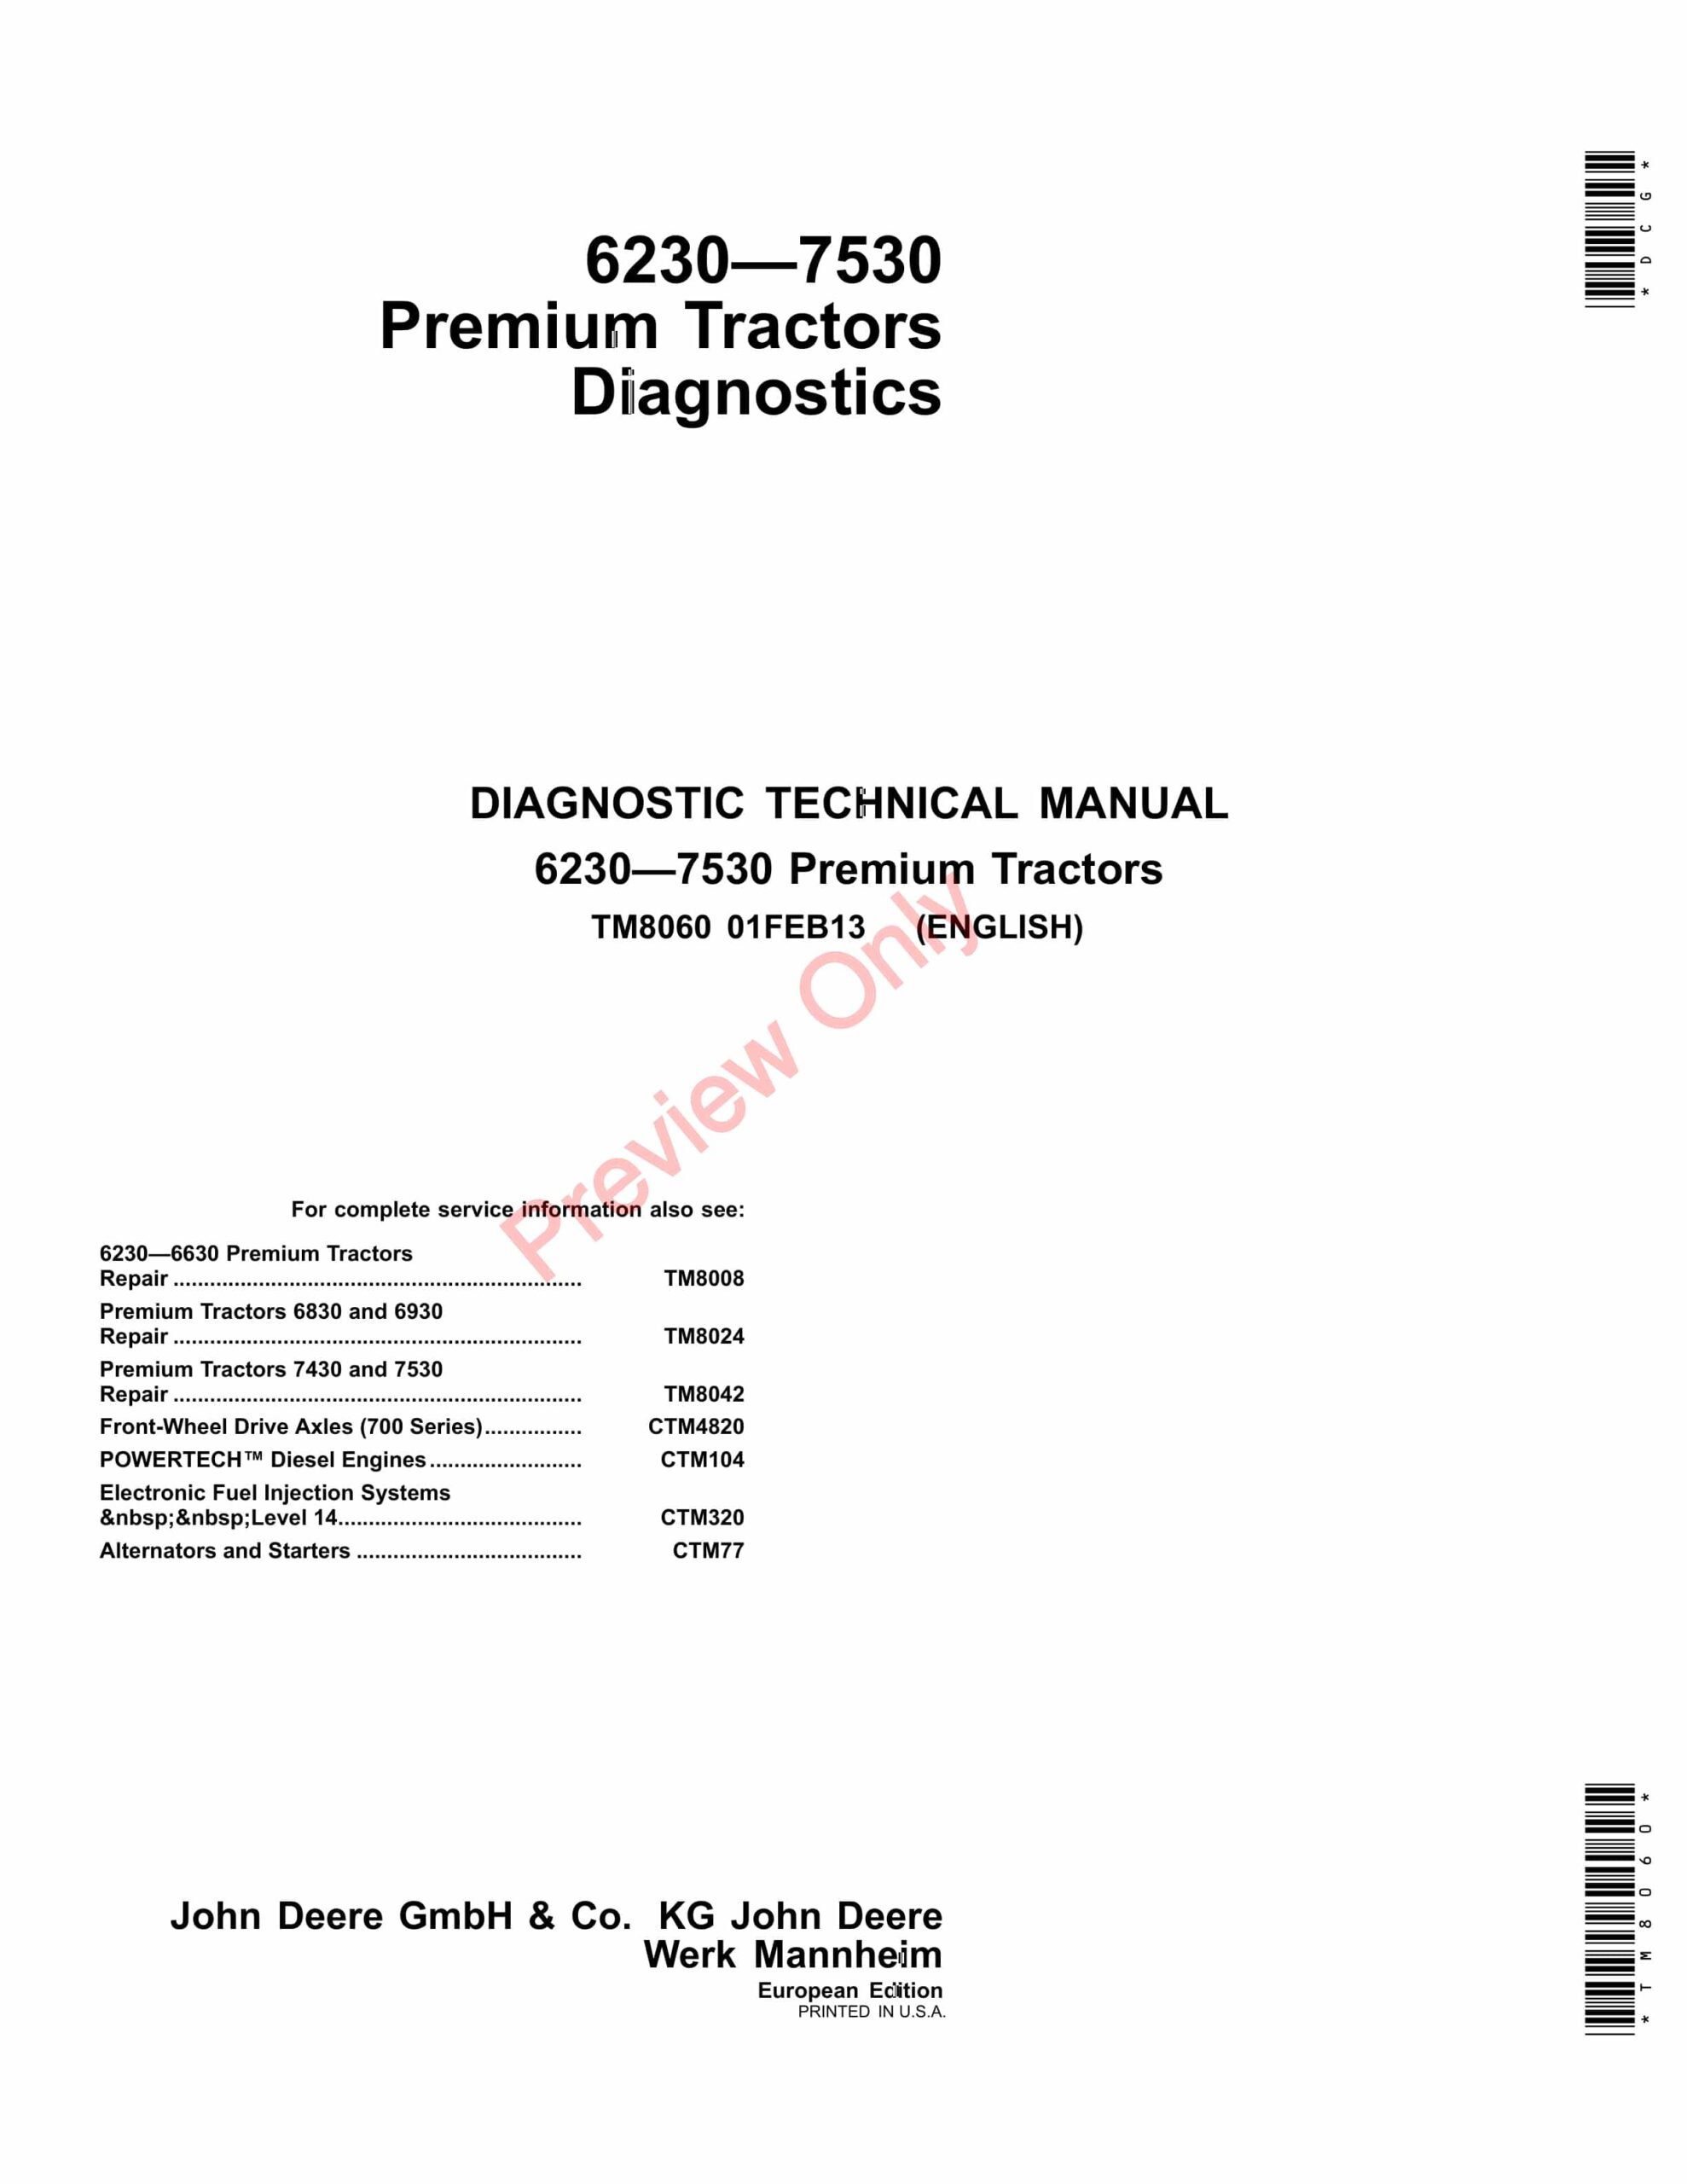 John Deere 6230, 6330, 6430, 6530, 6534, 6630, 6830, 6930, 7430 E, 7430, 7530 E and 7530 Preiumum Tractors Diagnostic Technical Manual TM8060 01FEB13-1